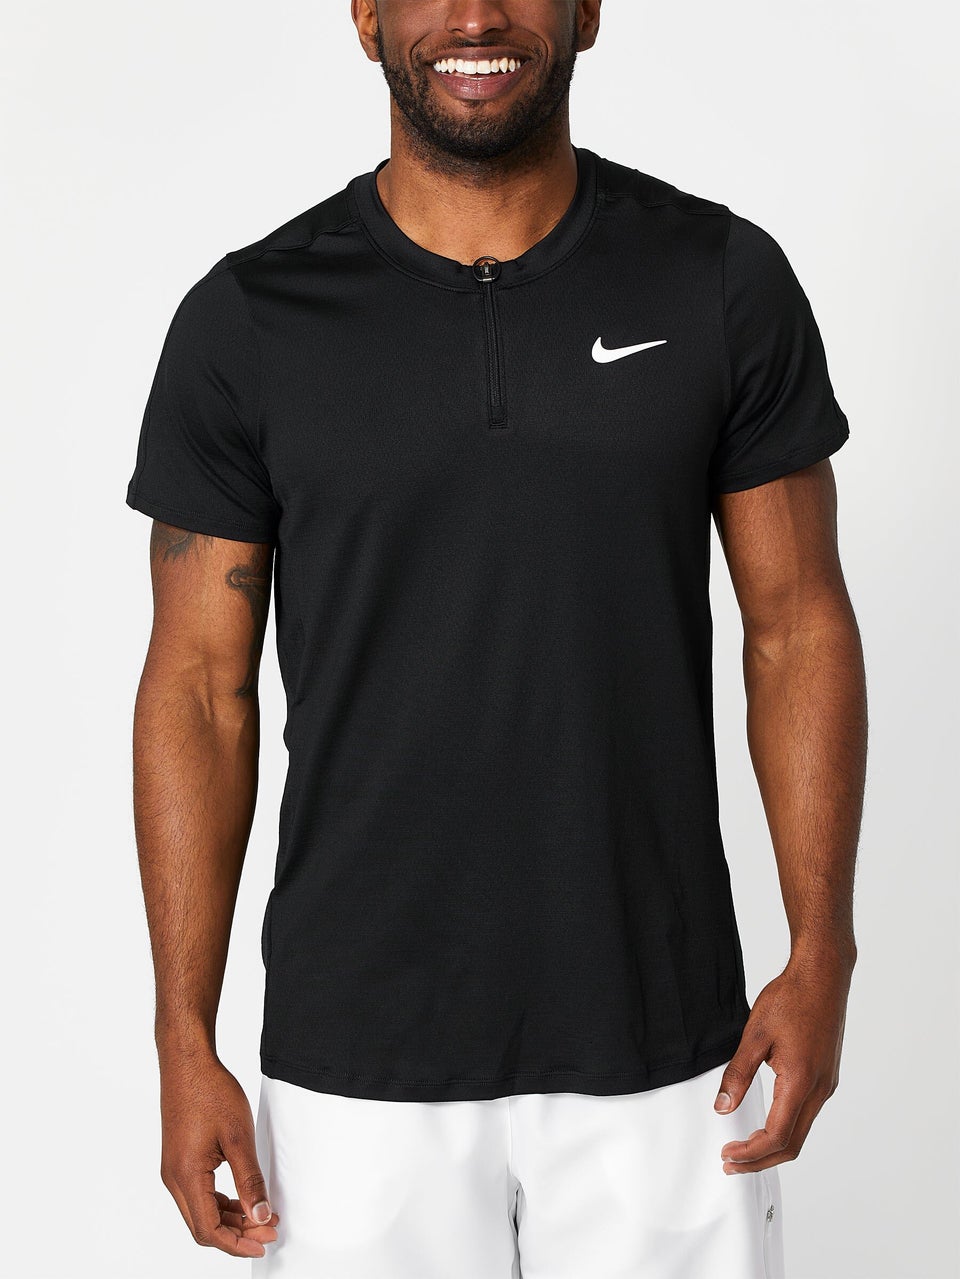 Nike Men's Basic Advantage Polo | Tennis Warehouse Europe